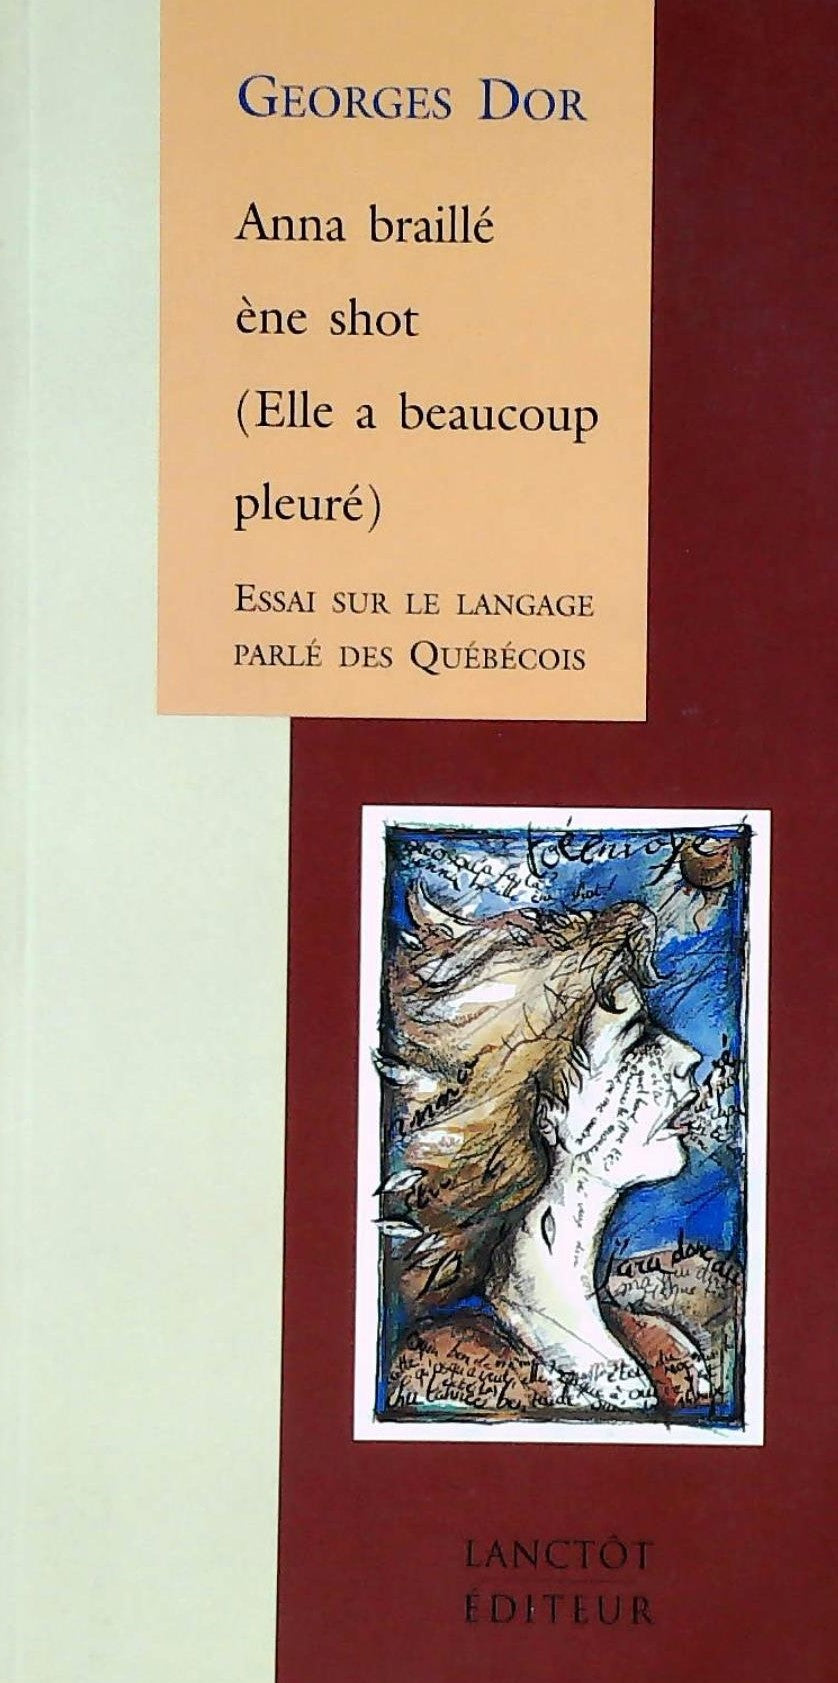 Livre ISBN 2894850158 Anna braillé ène shot (Elle a beaucoup pleuré) (Georges D'or)